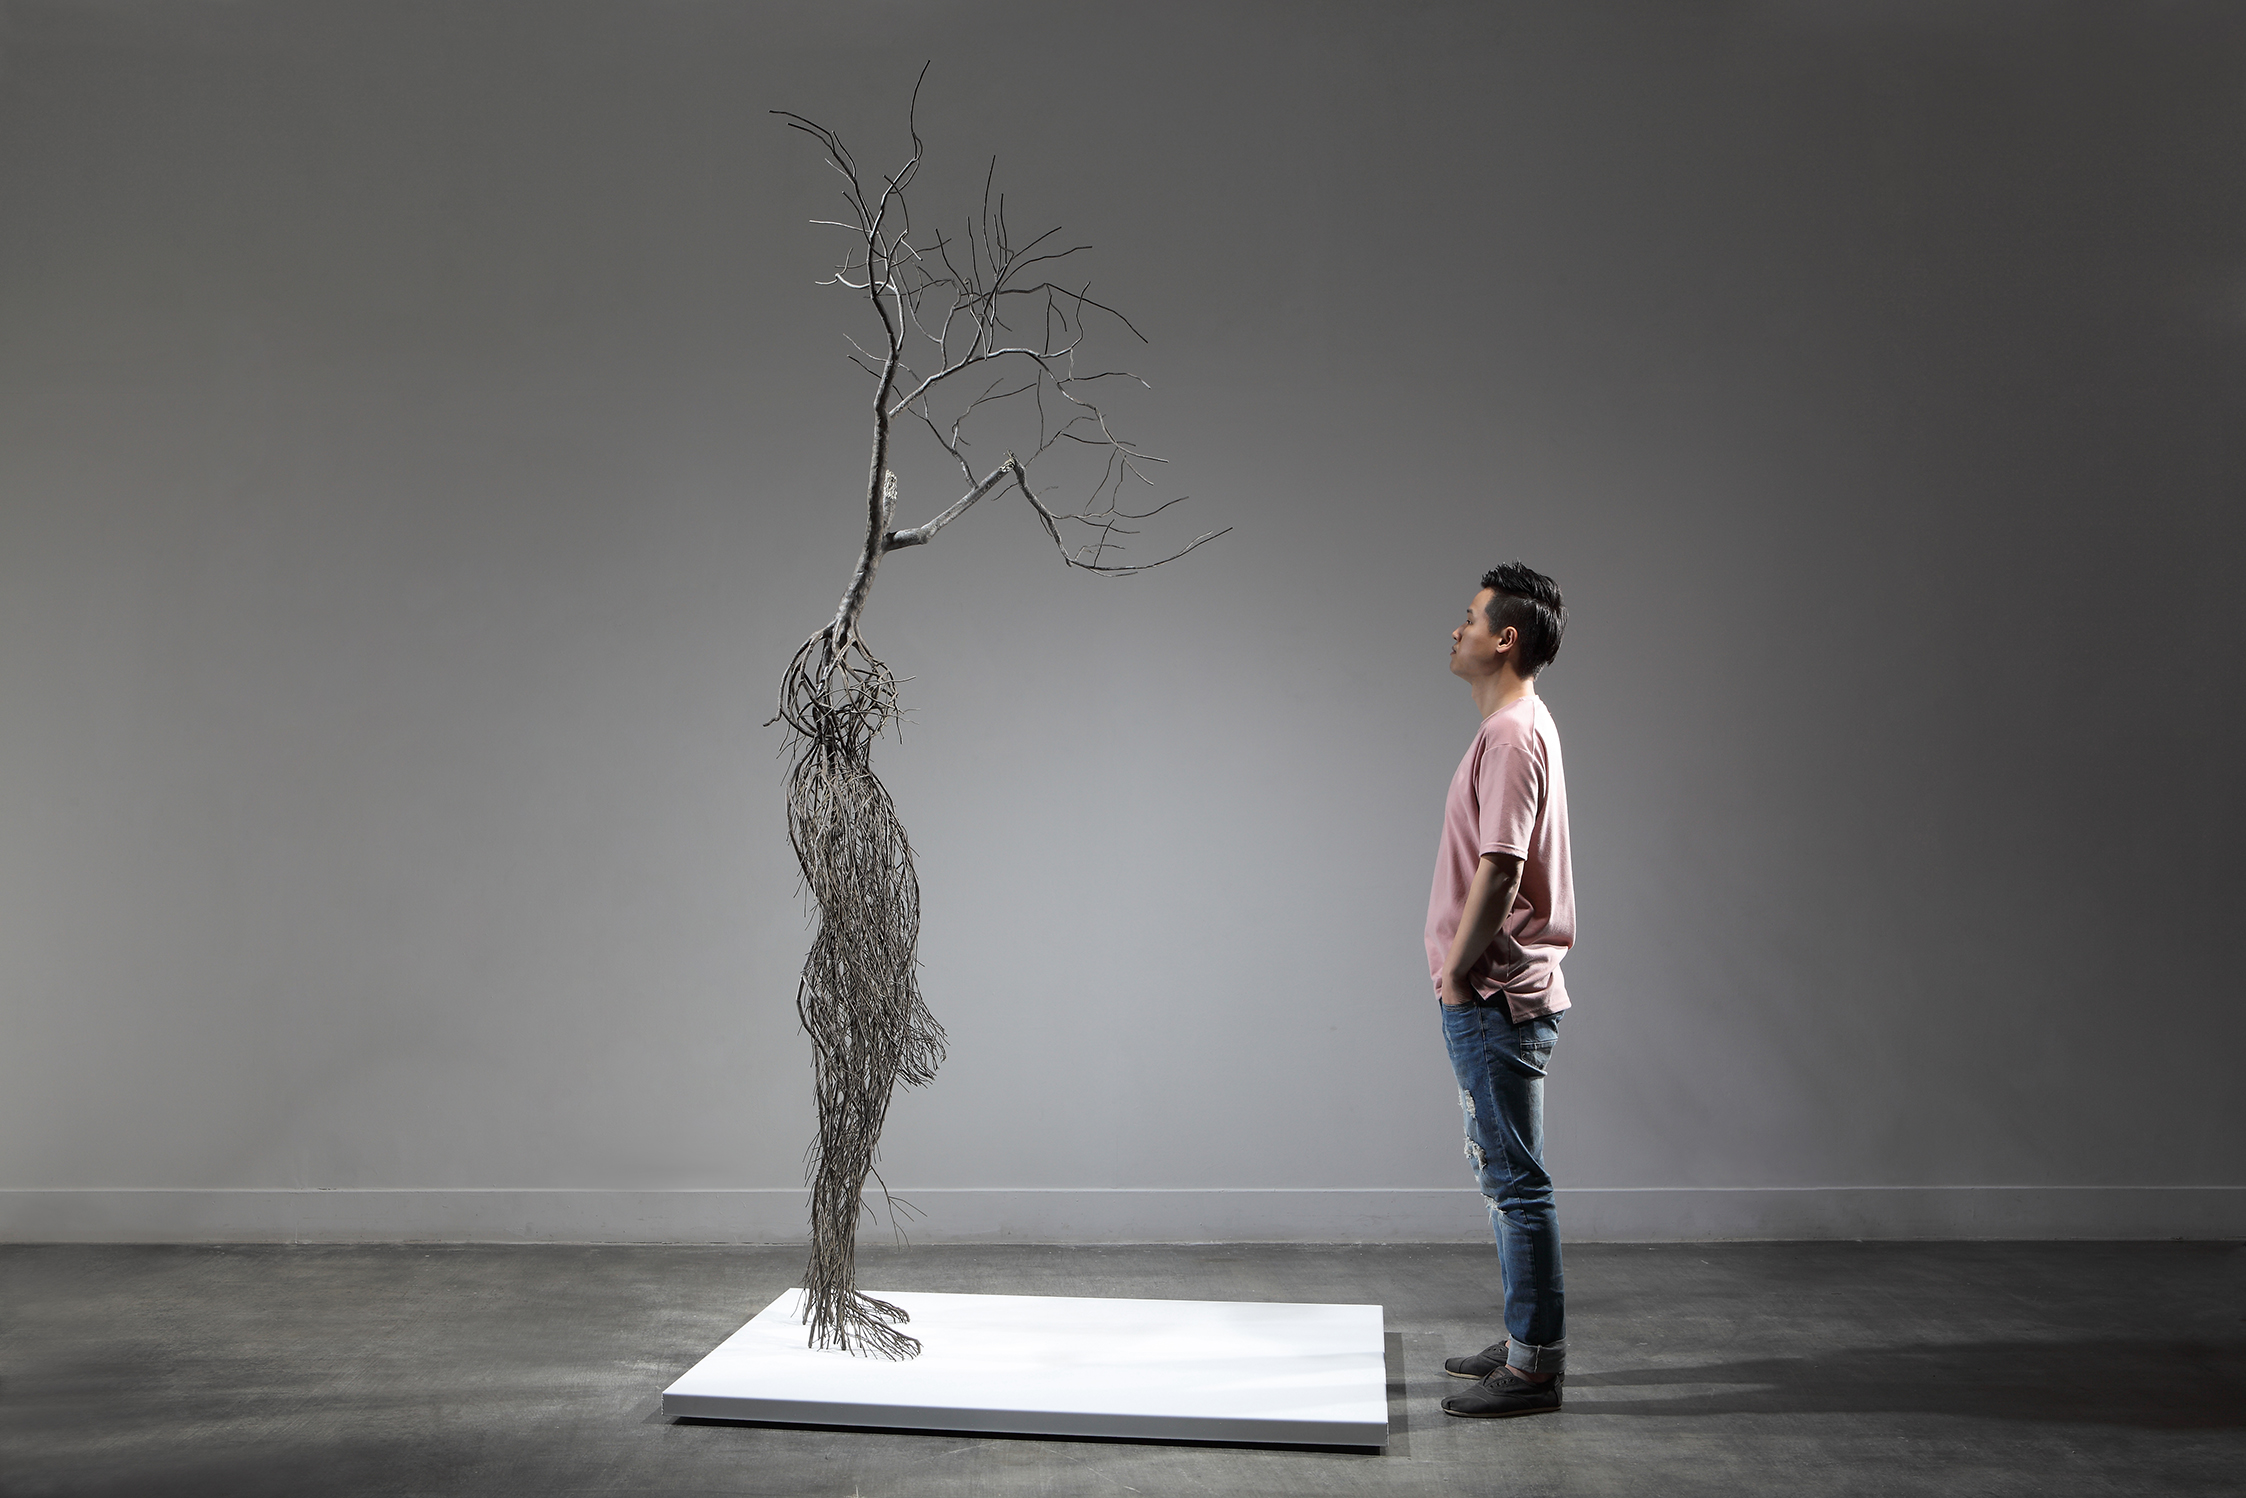 Man Vs. Nature: the Science Fiction Artwork of Sun-Hyuk Kim » Art Tours